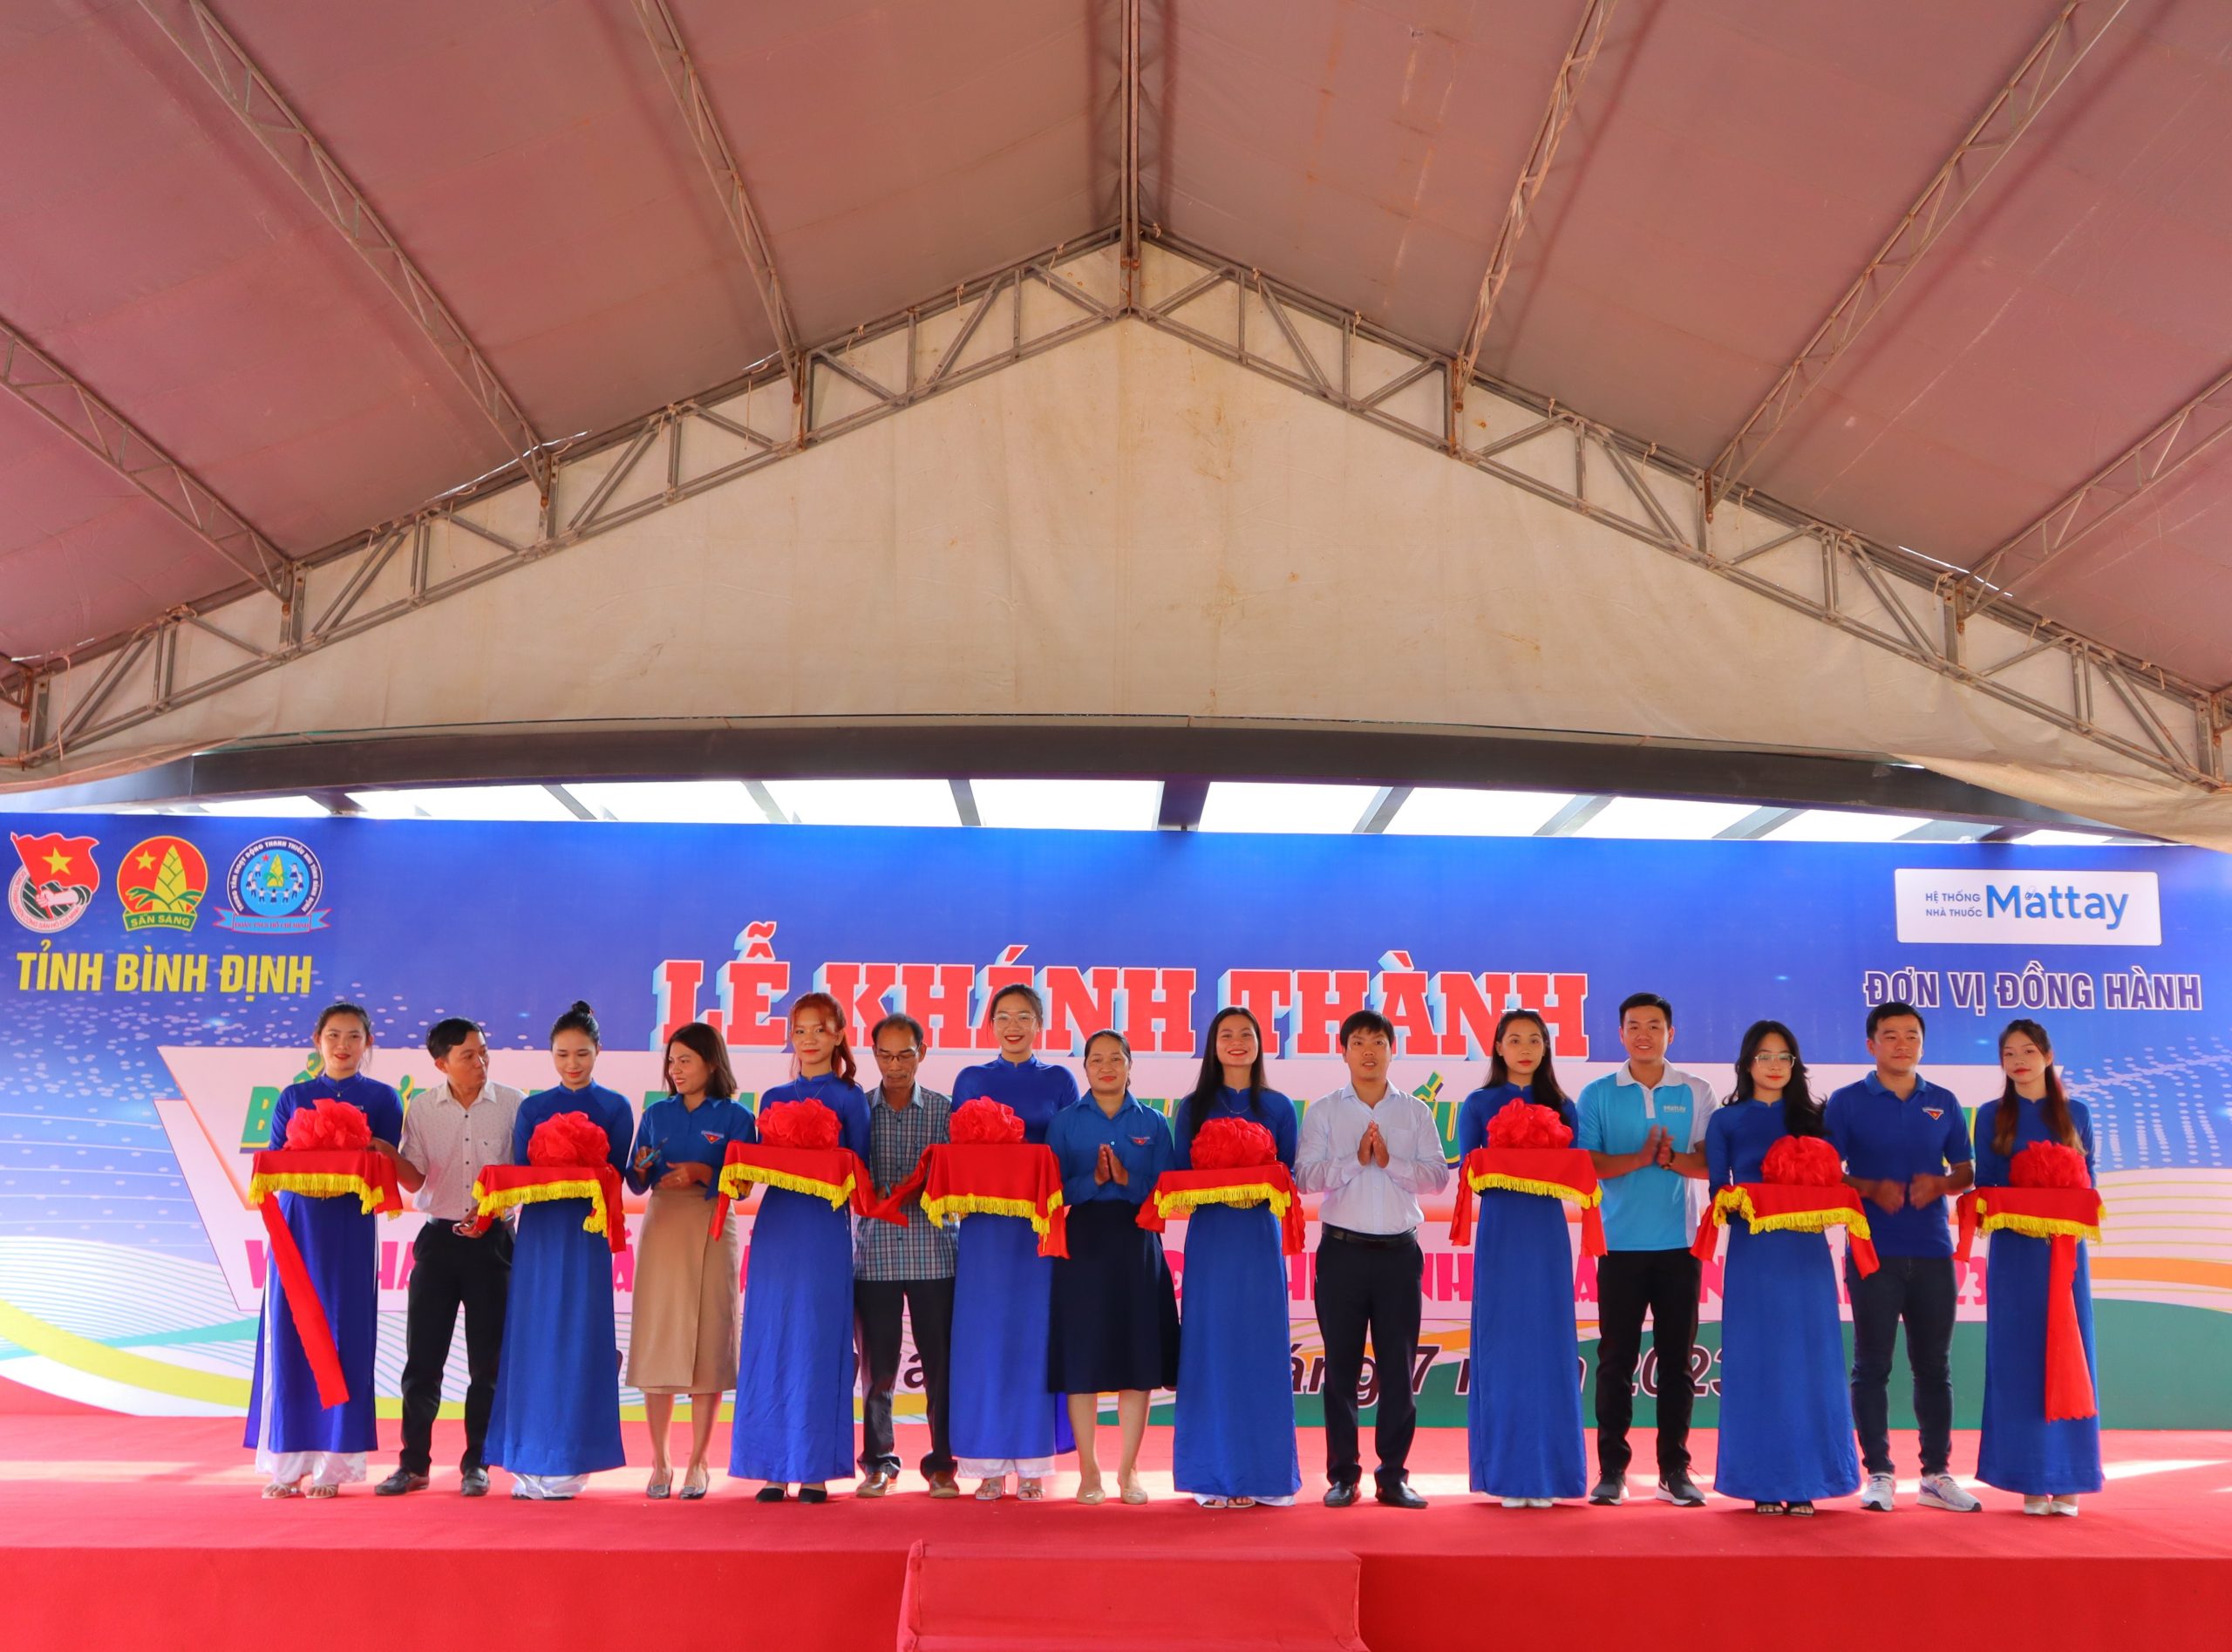 Tổ chức lễ Khánh thành bể bơi Trung tâm hoạt động thanh thiếu nhi tỉnh Bình Định